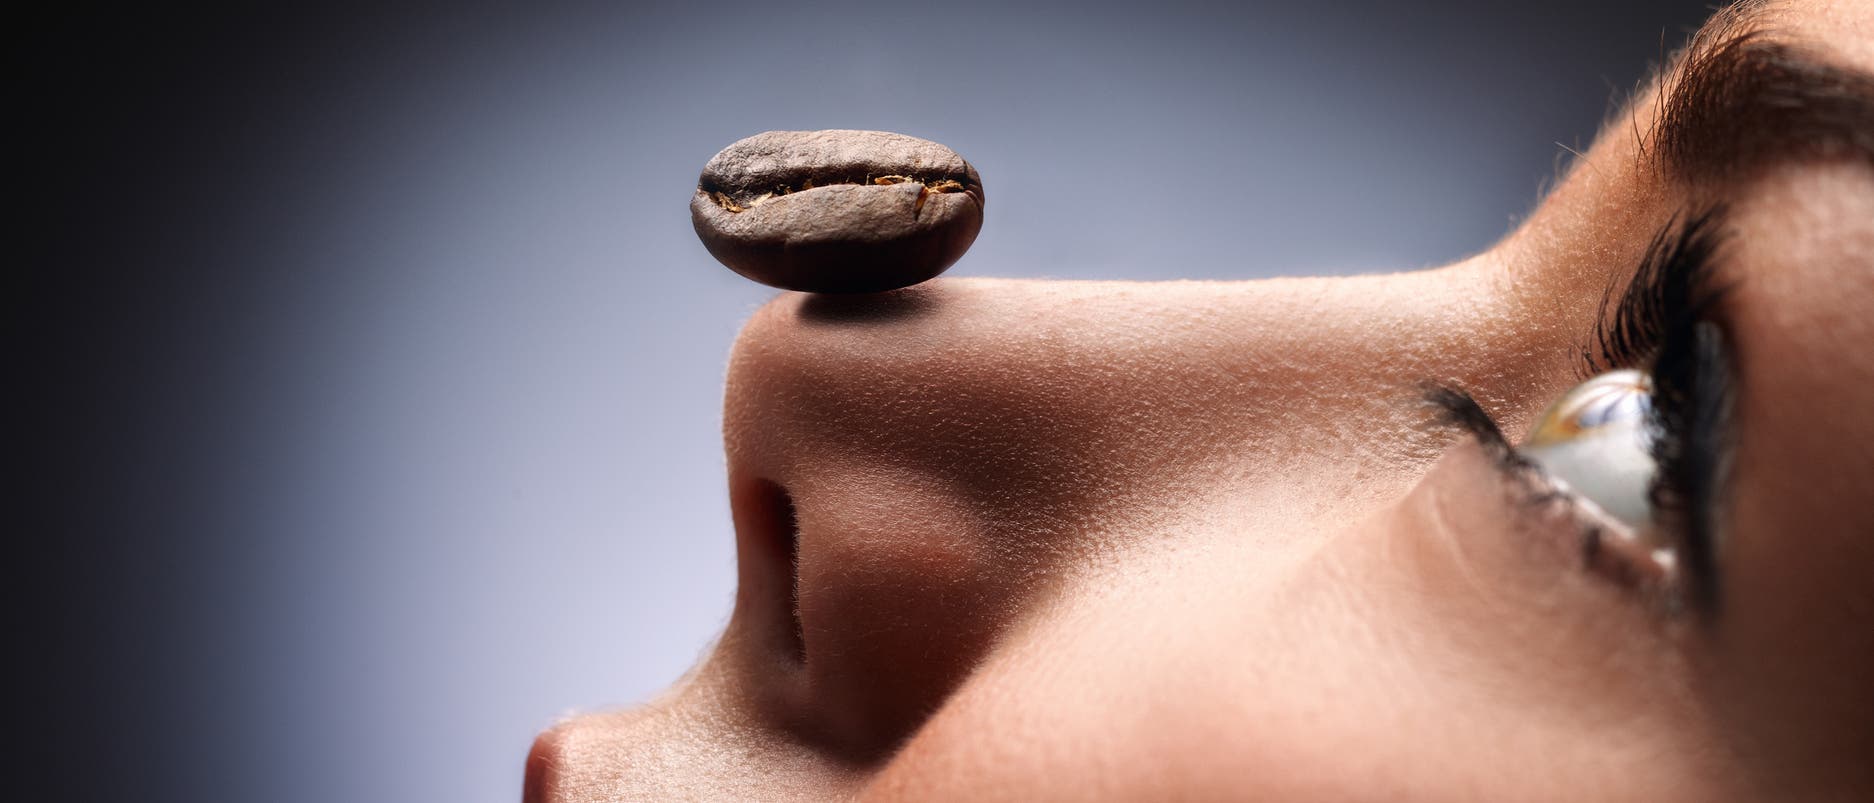 Eine Frau balanciert eine Kaffeebohne auf der Nase. Warum sie das tut, bleibt ihr Geheimnis, aber es sieht sehr anmutig aus.